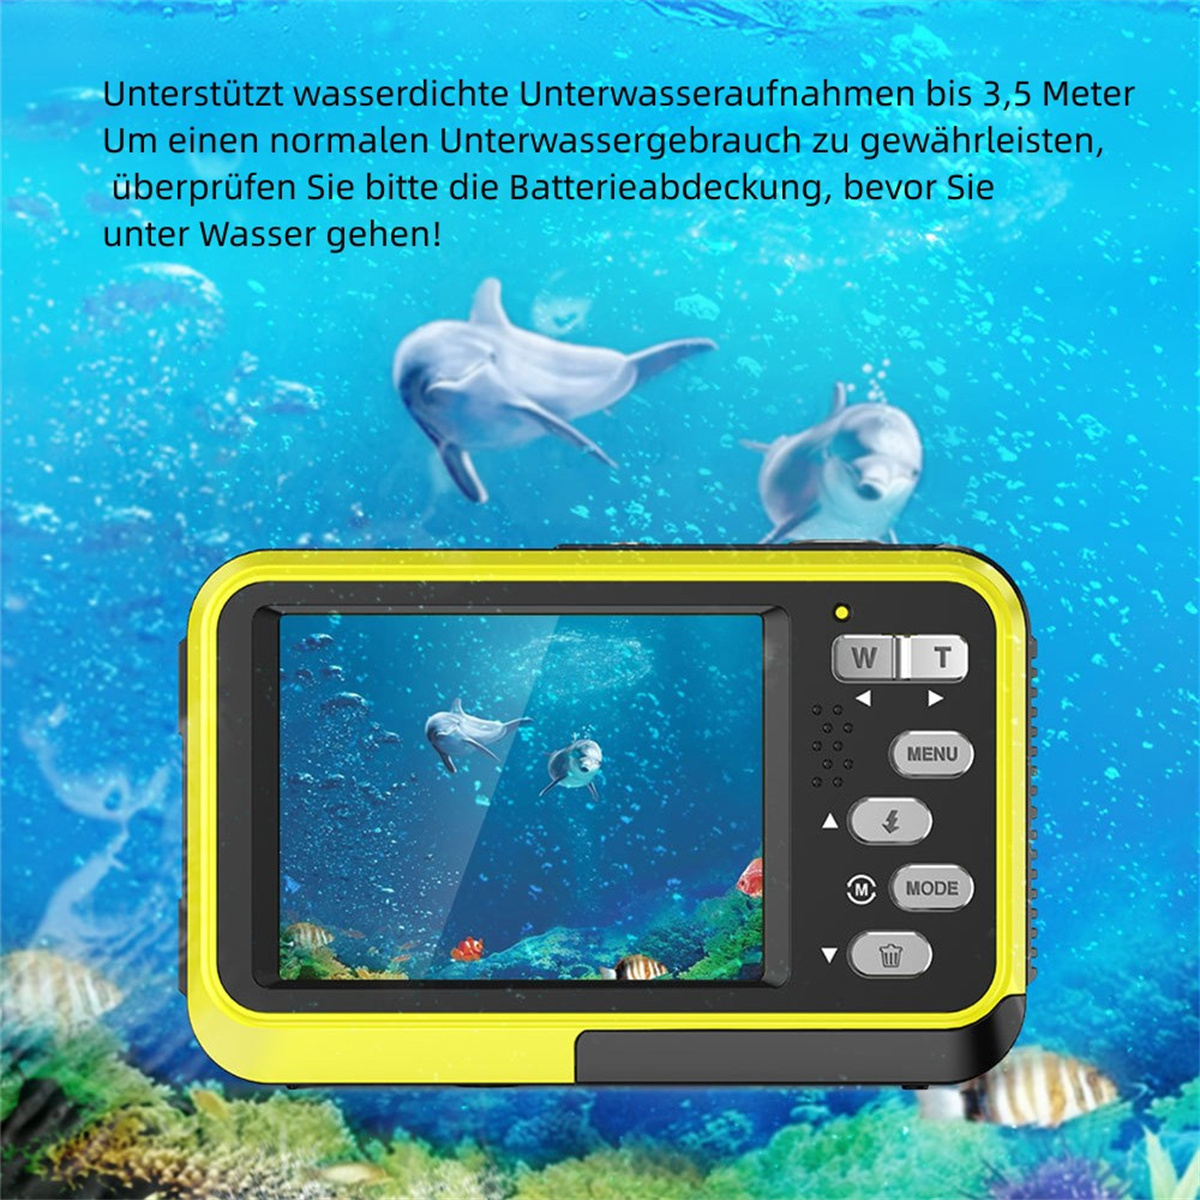 SYNTEK HD Dual Screen Fotografie schwarz, Verwacklungsschutz LCD-Bildschirm- Wasserdichte Autofokus, - intelligenter Kamera Digitalkamera